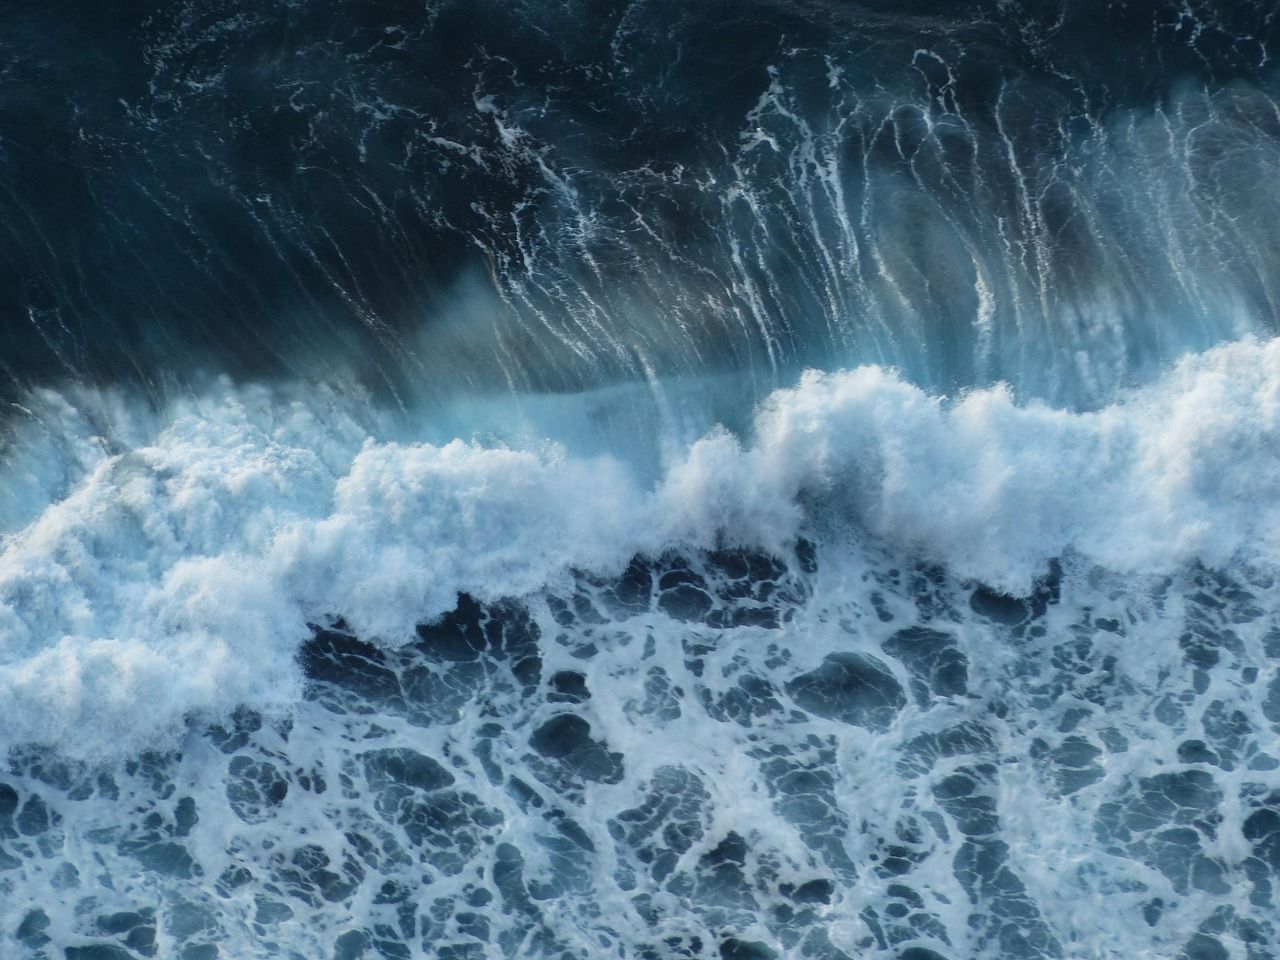  Wasser Hintergrundbild 1280x960. Wellen Meer Hintergrund Foto auf Pixabay